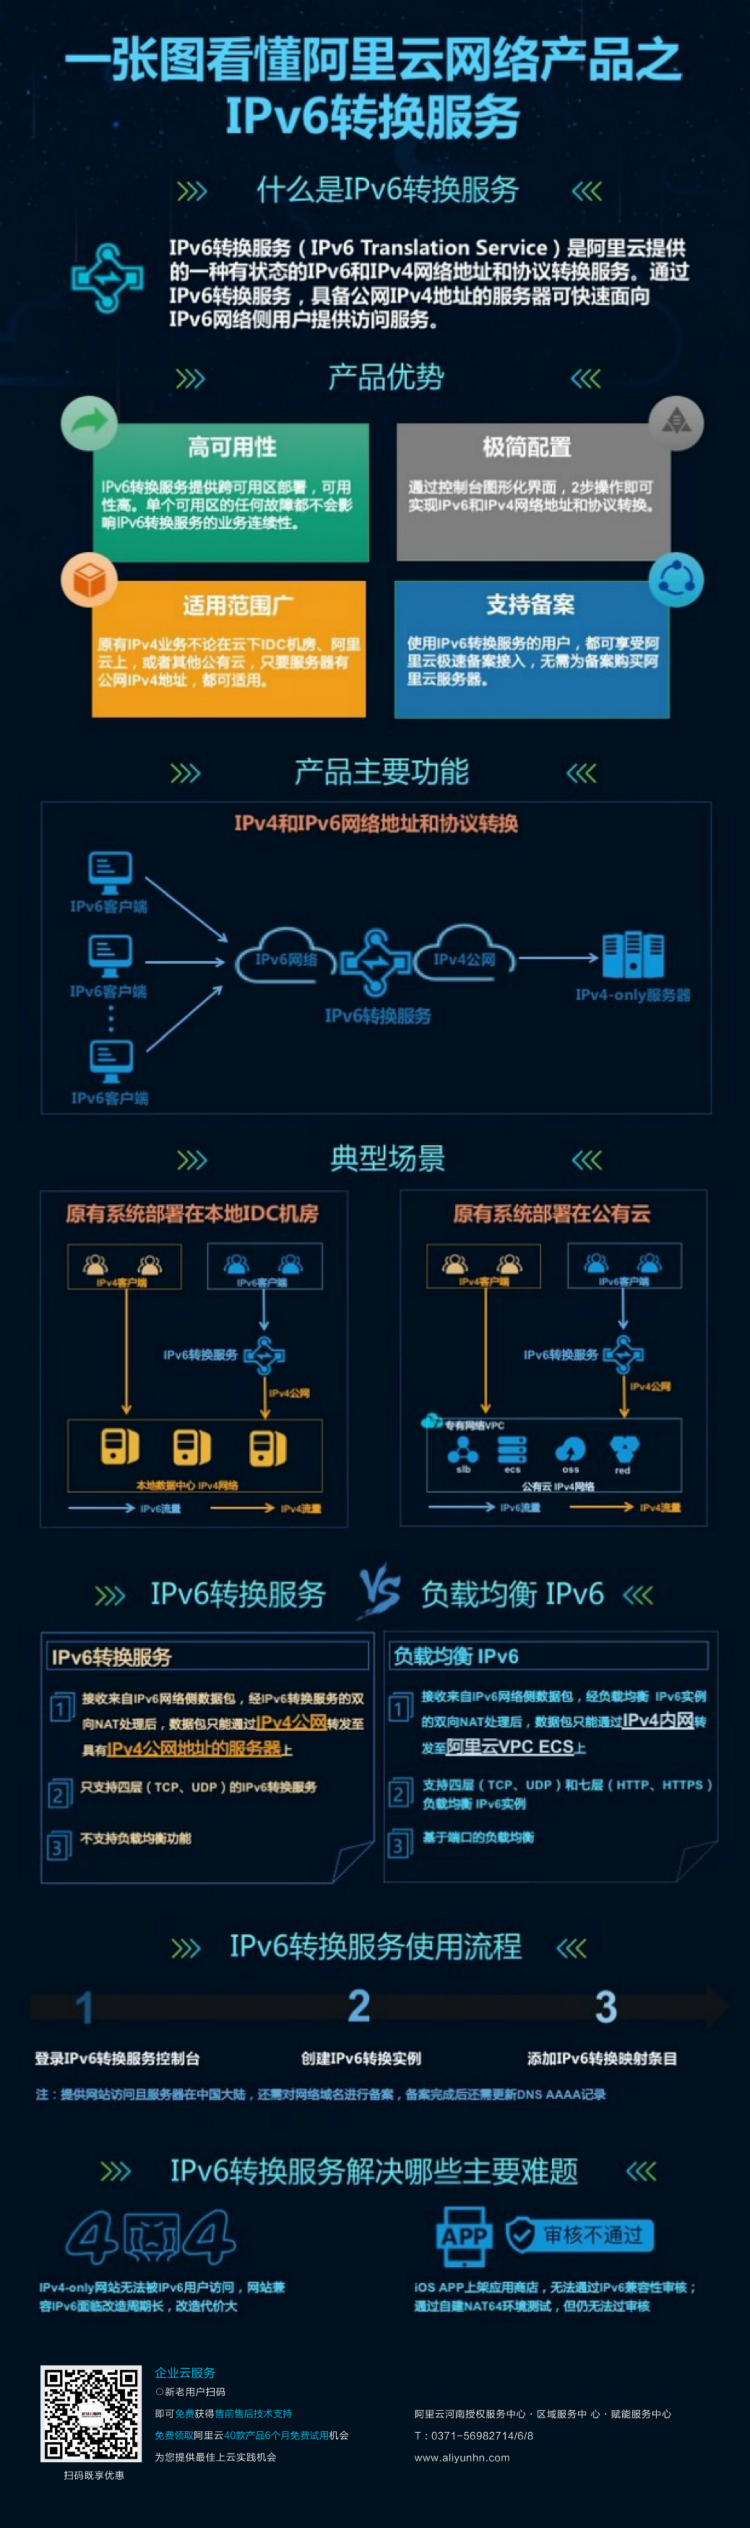  IPv6已来，一张图让您轻松看懂什么是阿里云IPv6转换服务